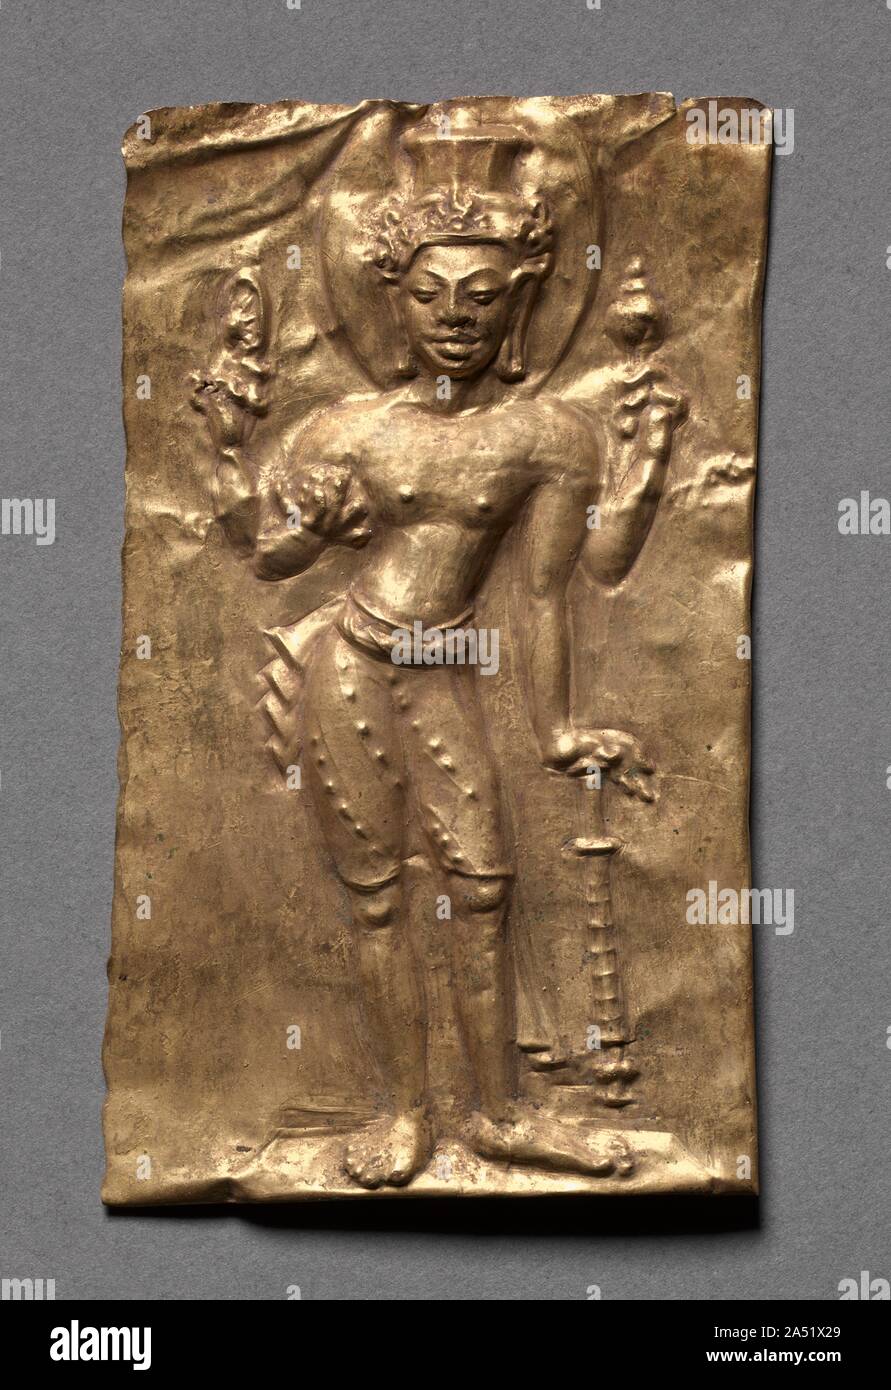 Plaque avec Vishnu, ch. 600s. Des images faites en Inde au cours de la période Gupta (ad 300s à 600s) ont été influents dans l'élaboration du développement précoce de l'art bouddhiste et hindoue en Asie du sud-est. Ce jeton d'or représente le dieu hindou Vishnu, identifiés par la couronne, à sommet plat, ses quatre bras, et d'attributs : roue, conque, club, et des mottes de terre. Remarquable pour son naturalisme est le raccourcissement de son pied droit. Ces objets ont été fabriqués en or précieux d'être sécrétée sous une pierre sacrée icône dans la Thaïlande ou le Cambodge pour infuser le temple avec la richesse et la gloire. Banque D'Images